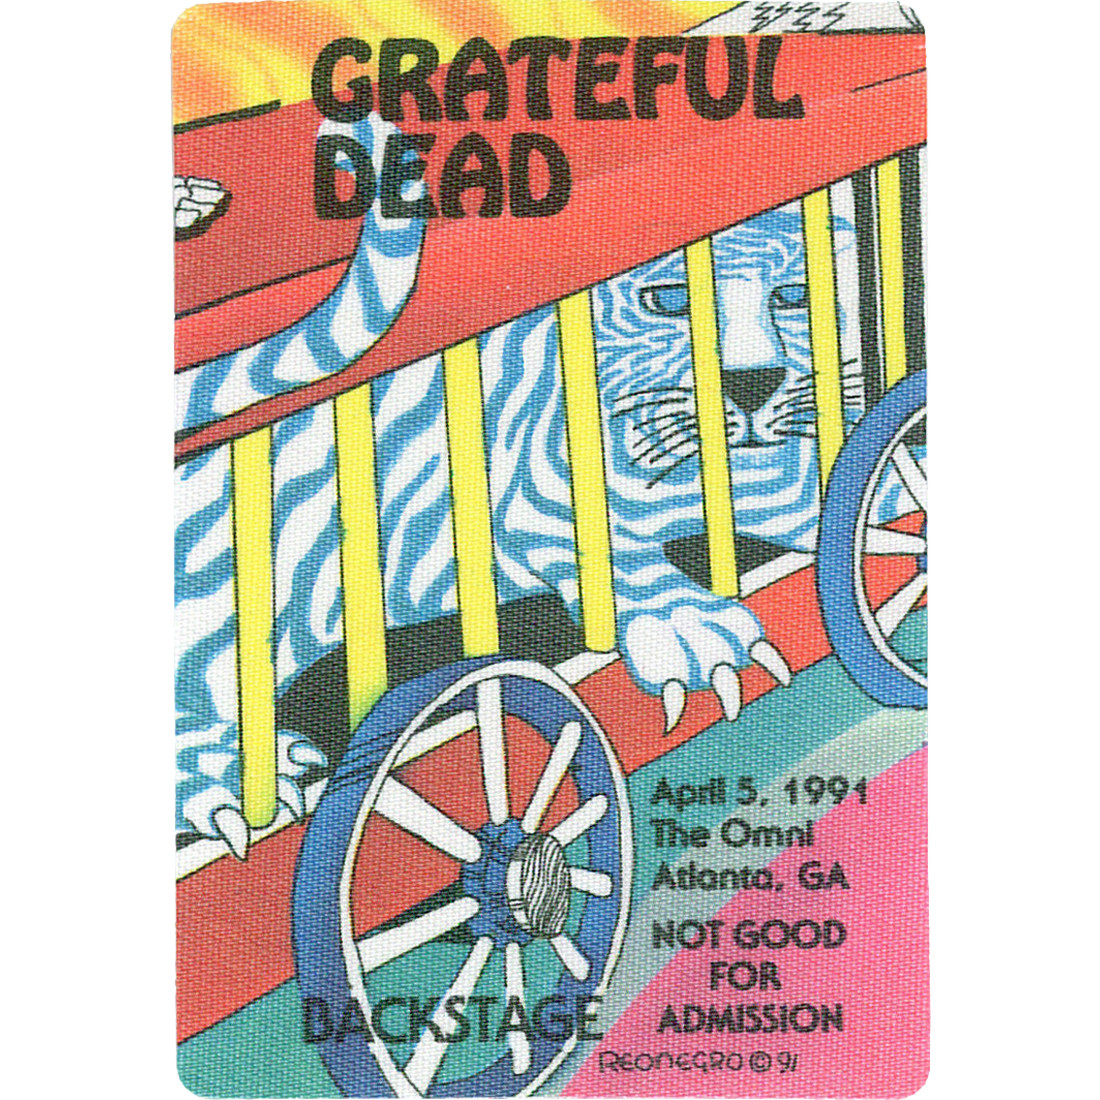 grateful dead tour dates 1991